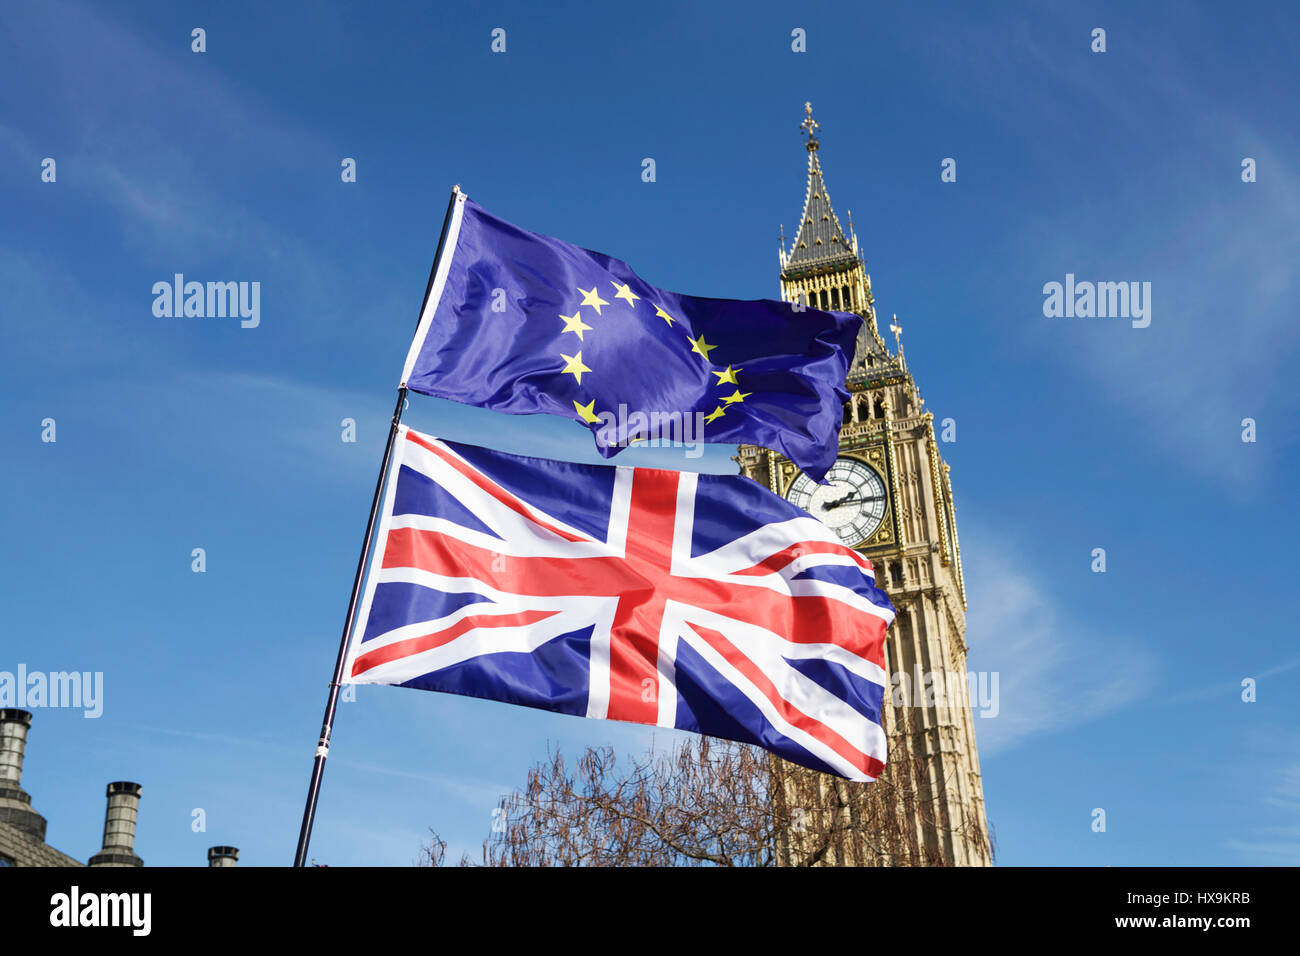 Londra, Regno Unito. 25 marzo 2017. Unite per l'Europa ha organizzato una marcia Pro-UE a Londra. I dimostranti anti anti anti anti anti-BREXIT marciano da Park Lane a Parliament Square. Bandiera BREXIT, bandiere, bandiera Union Jack, bandiera UE, bandiera europea, Big ben. Bandiere del Parlamento. Politica del Regno Unito Regno Unito. Concetto Brexit. Democrazia britannica. Vota la Brexit, il parlamento britannico accordo sulla brexit. Negoziati commerciali. Foto Stock